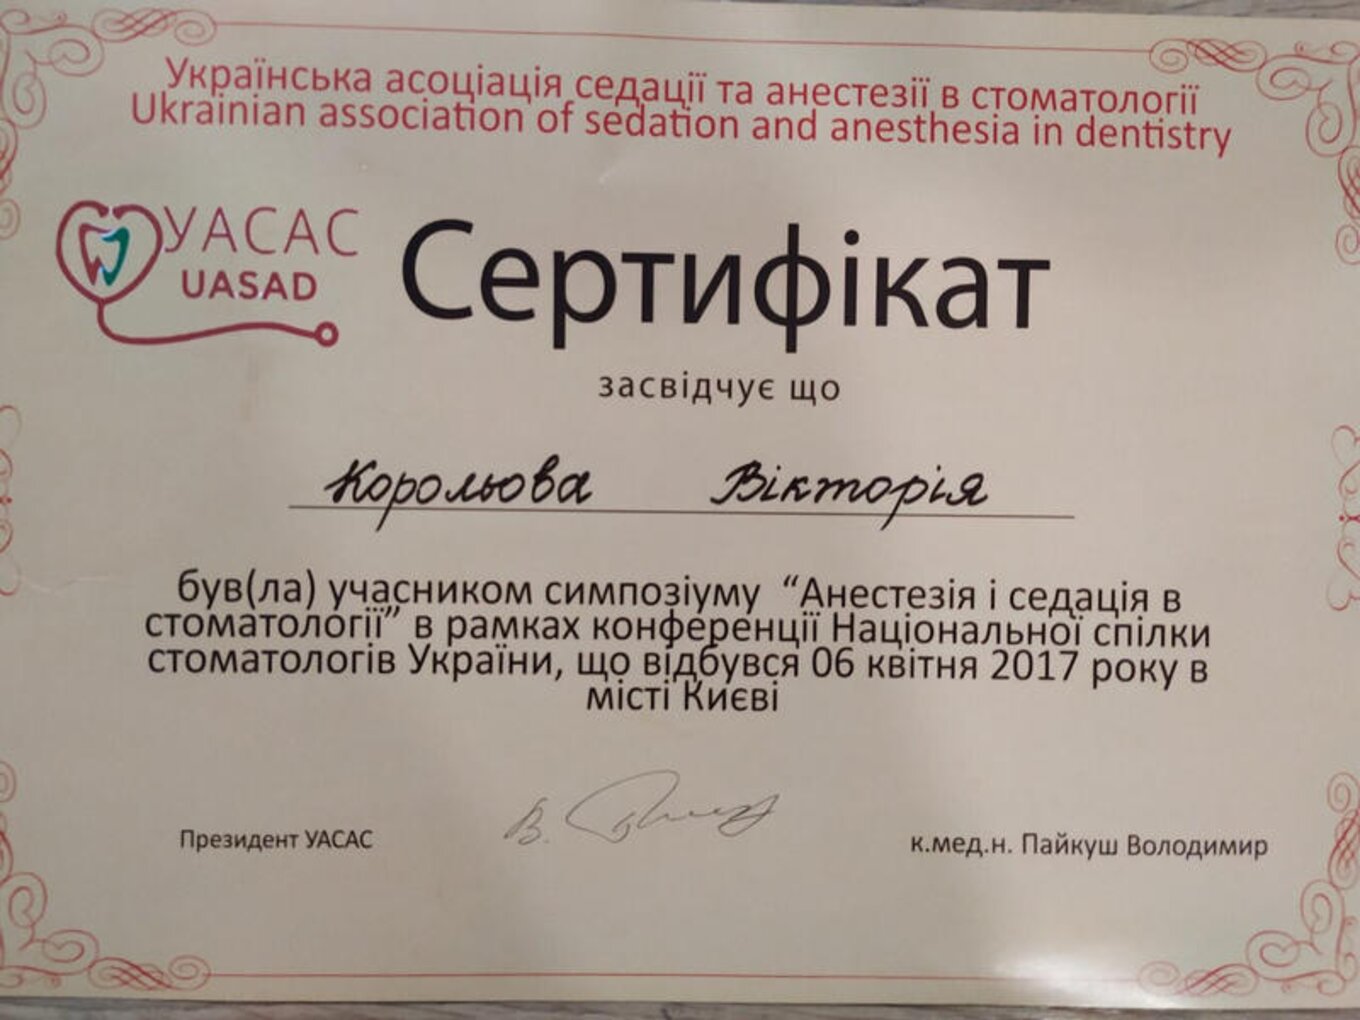 certificates/korolova-viktoriya-emanuyilivna/hemomedika-cert-koroleva-15.jpg